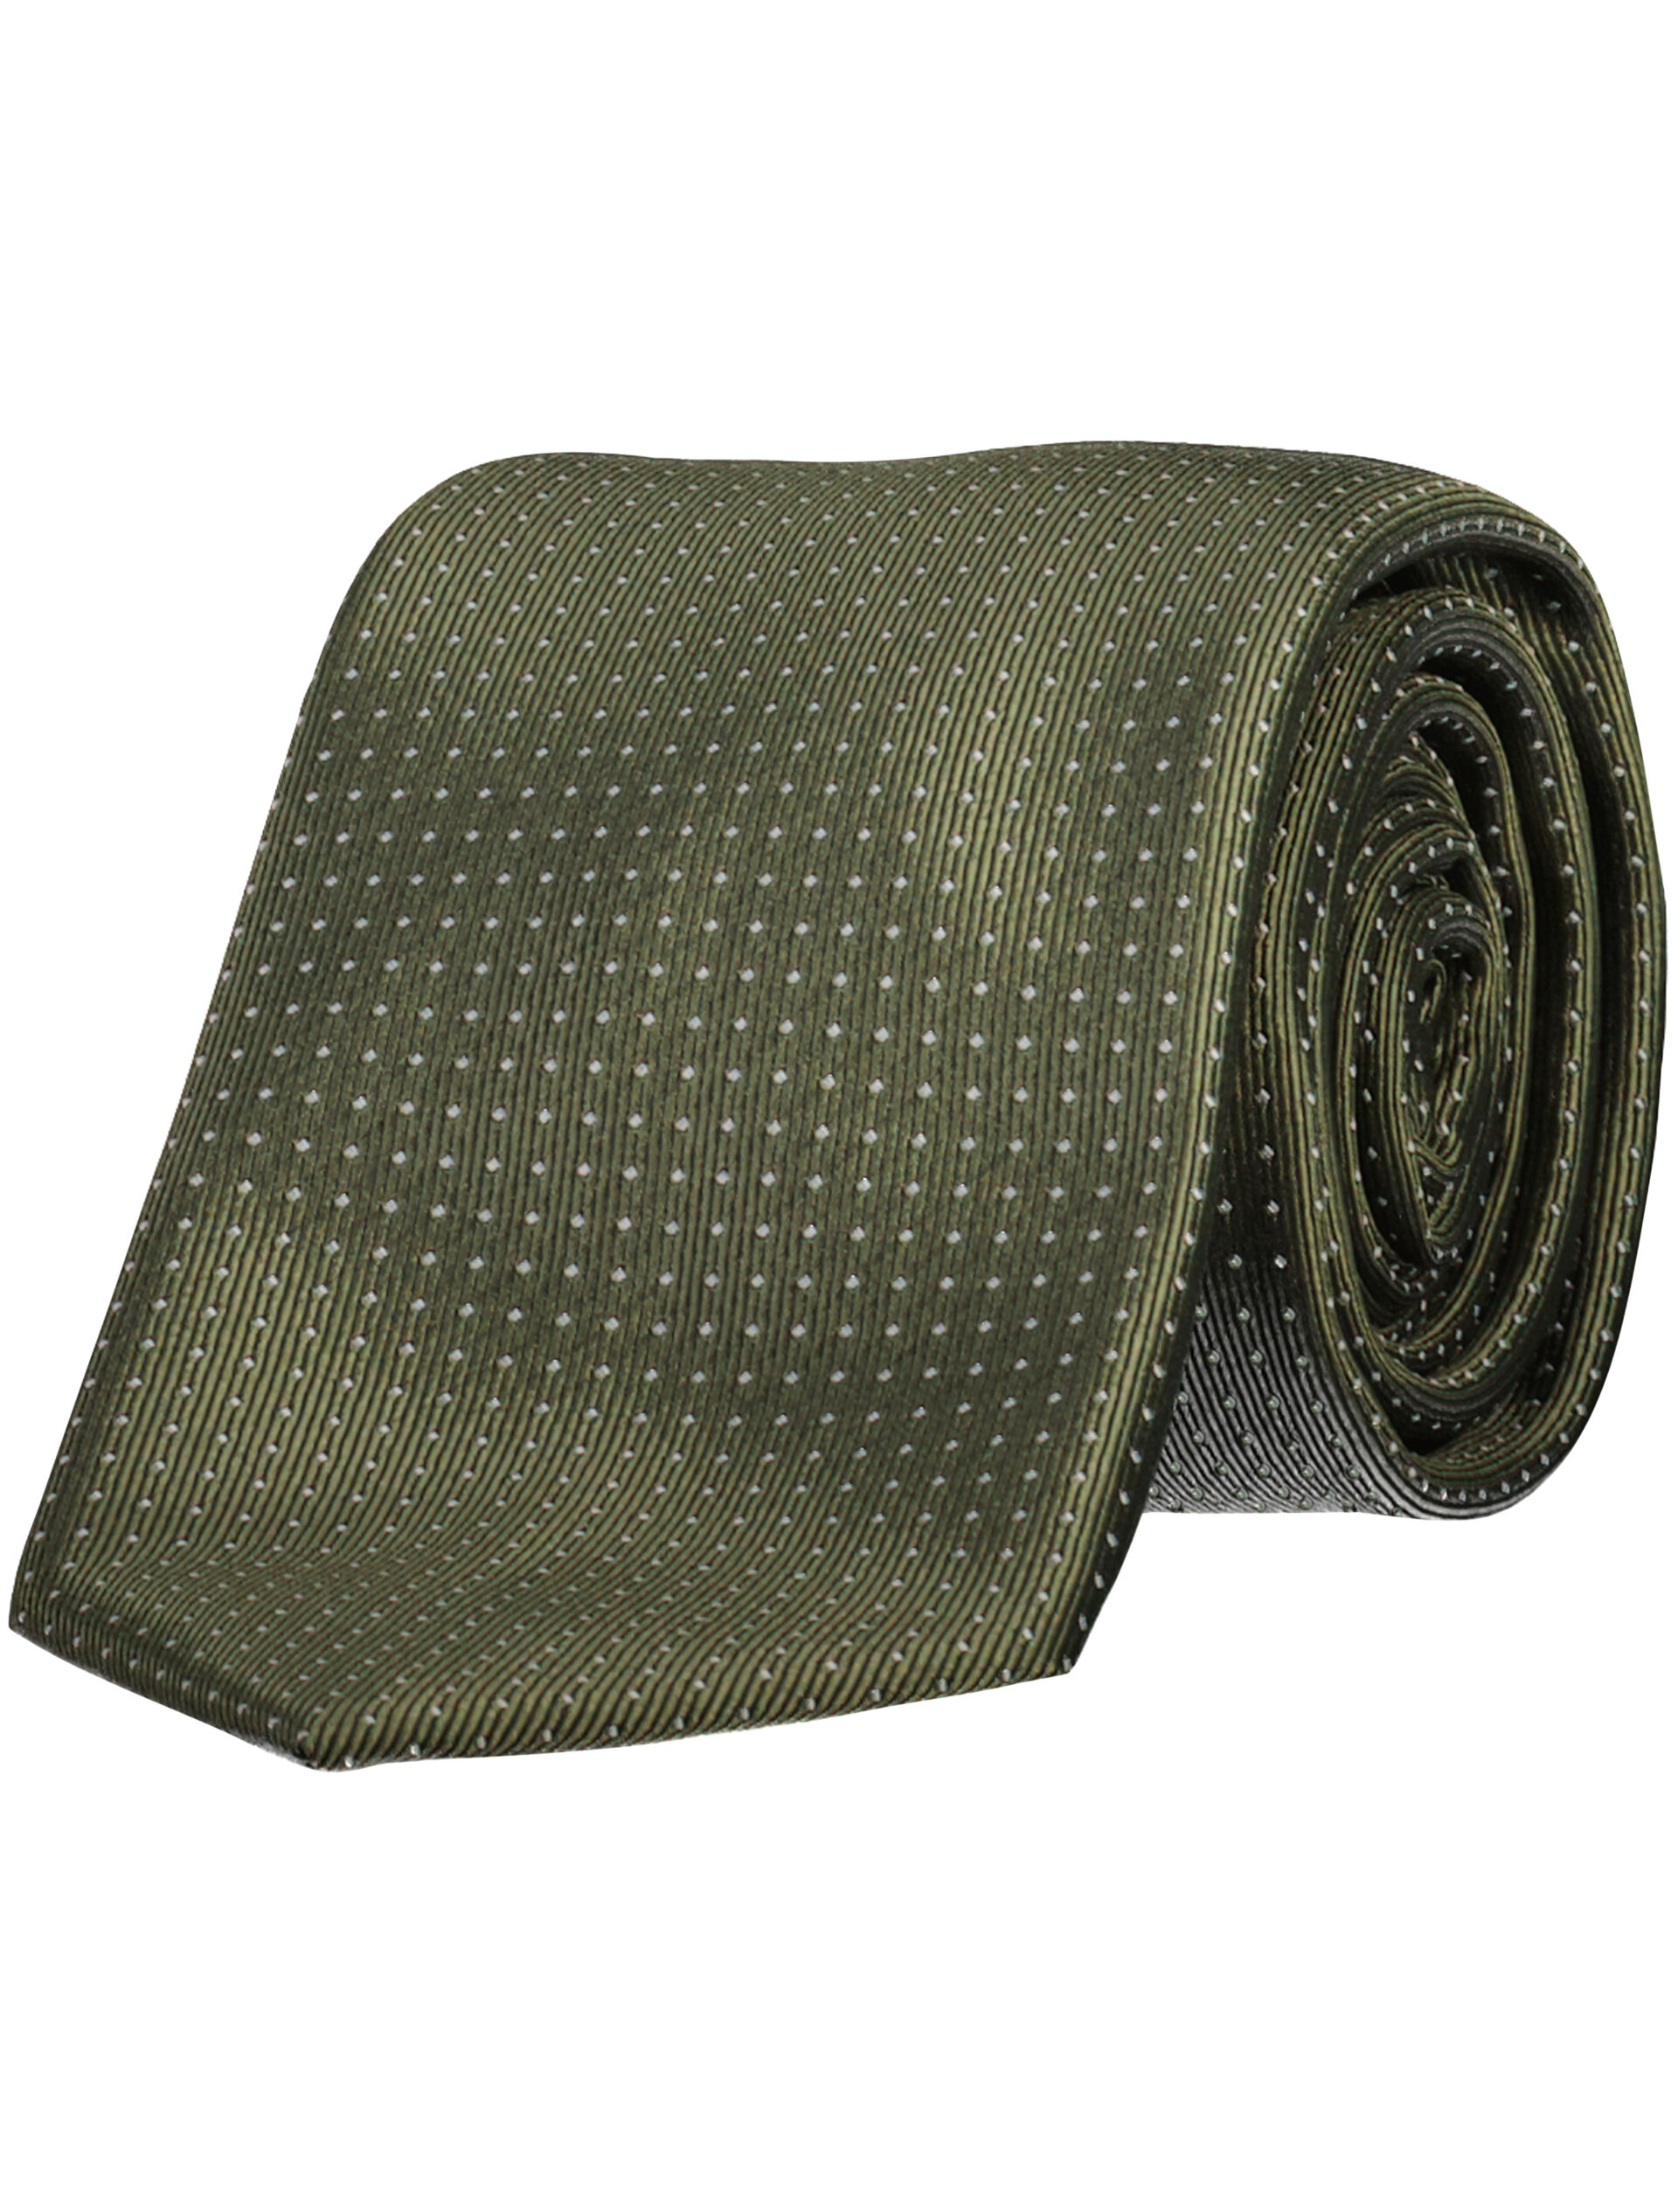 Krawatte 30-972002